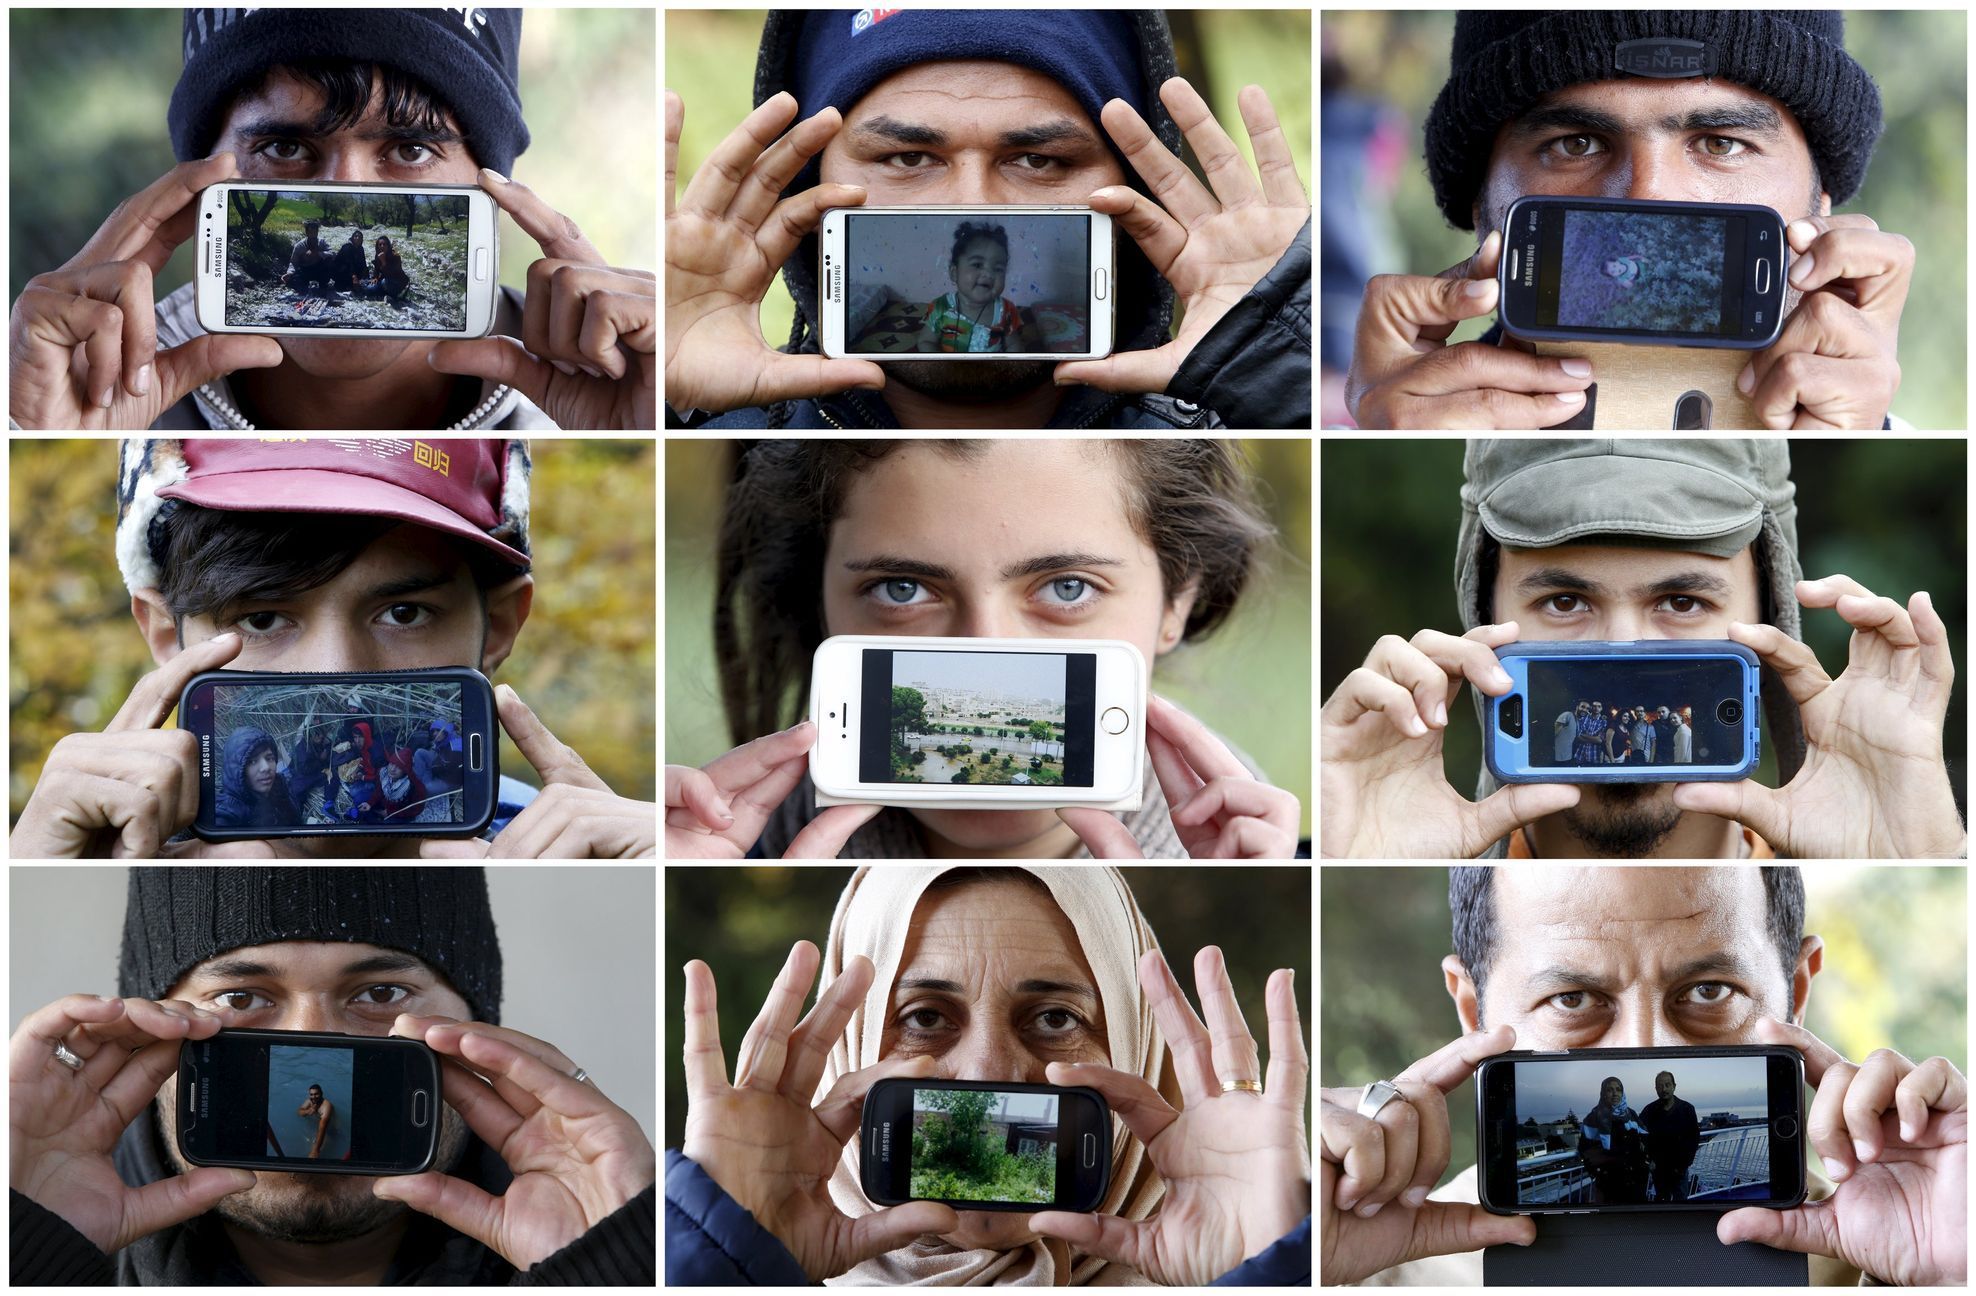 Sentilj ve Slovinsku. Běženci ukazují fotky ze svých zemí nebo obrázky blízkých